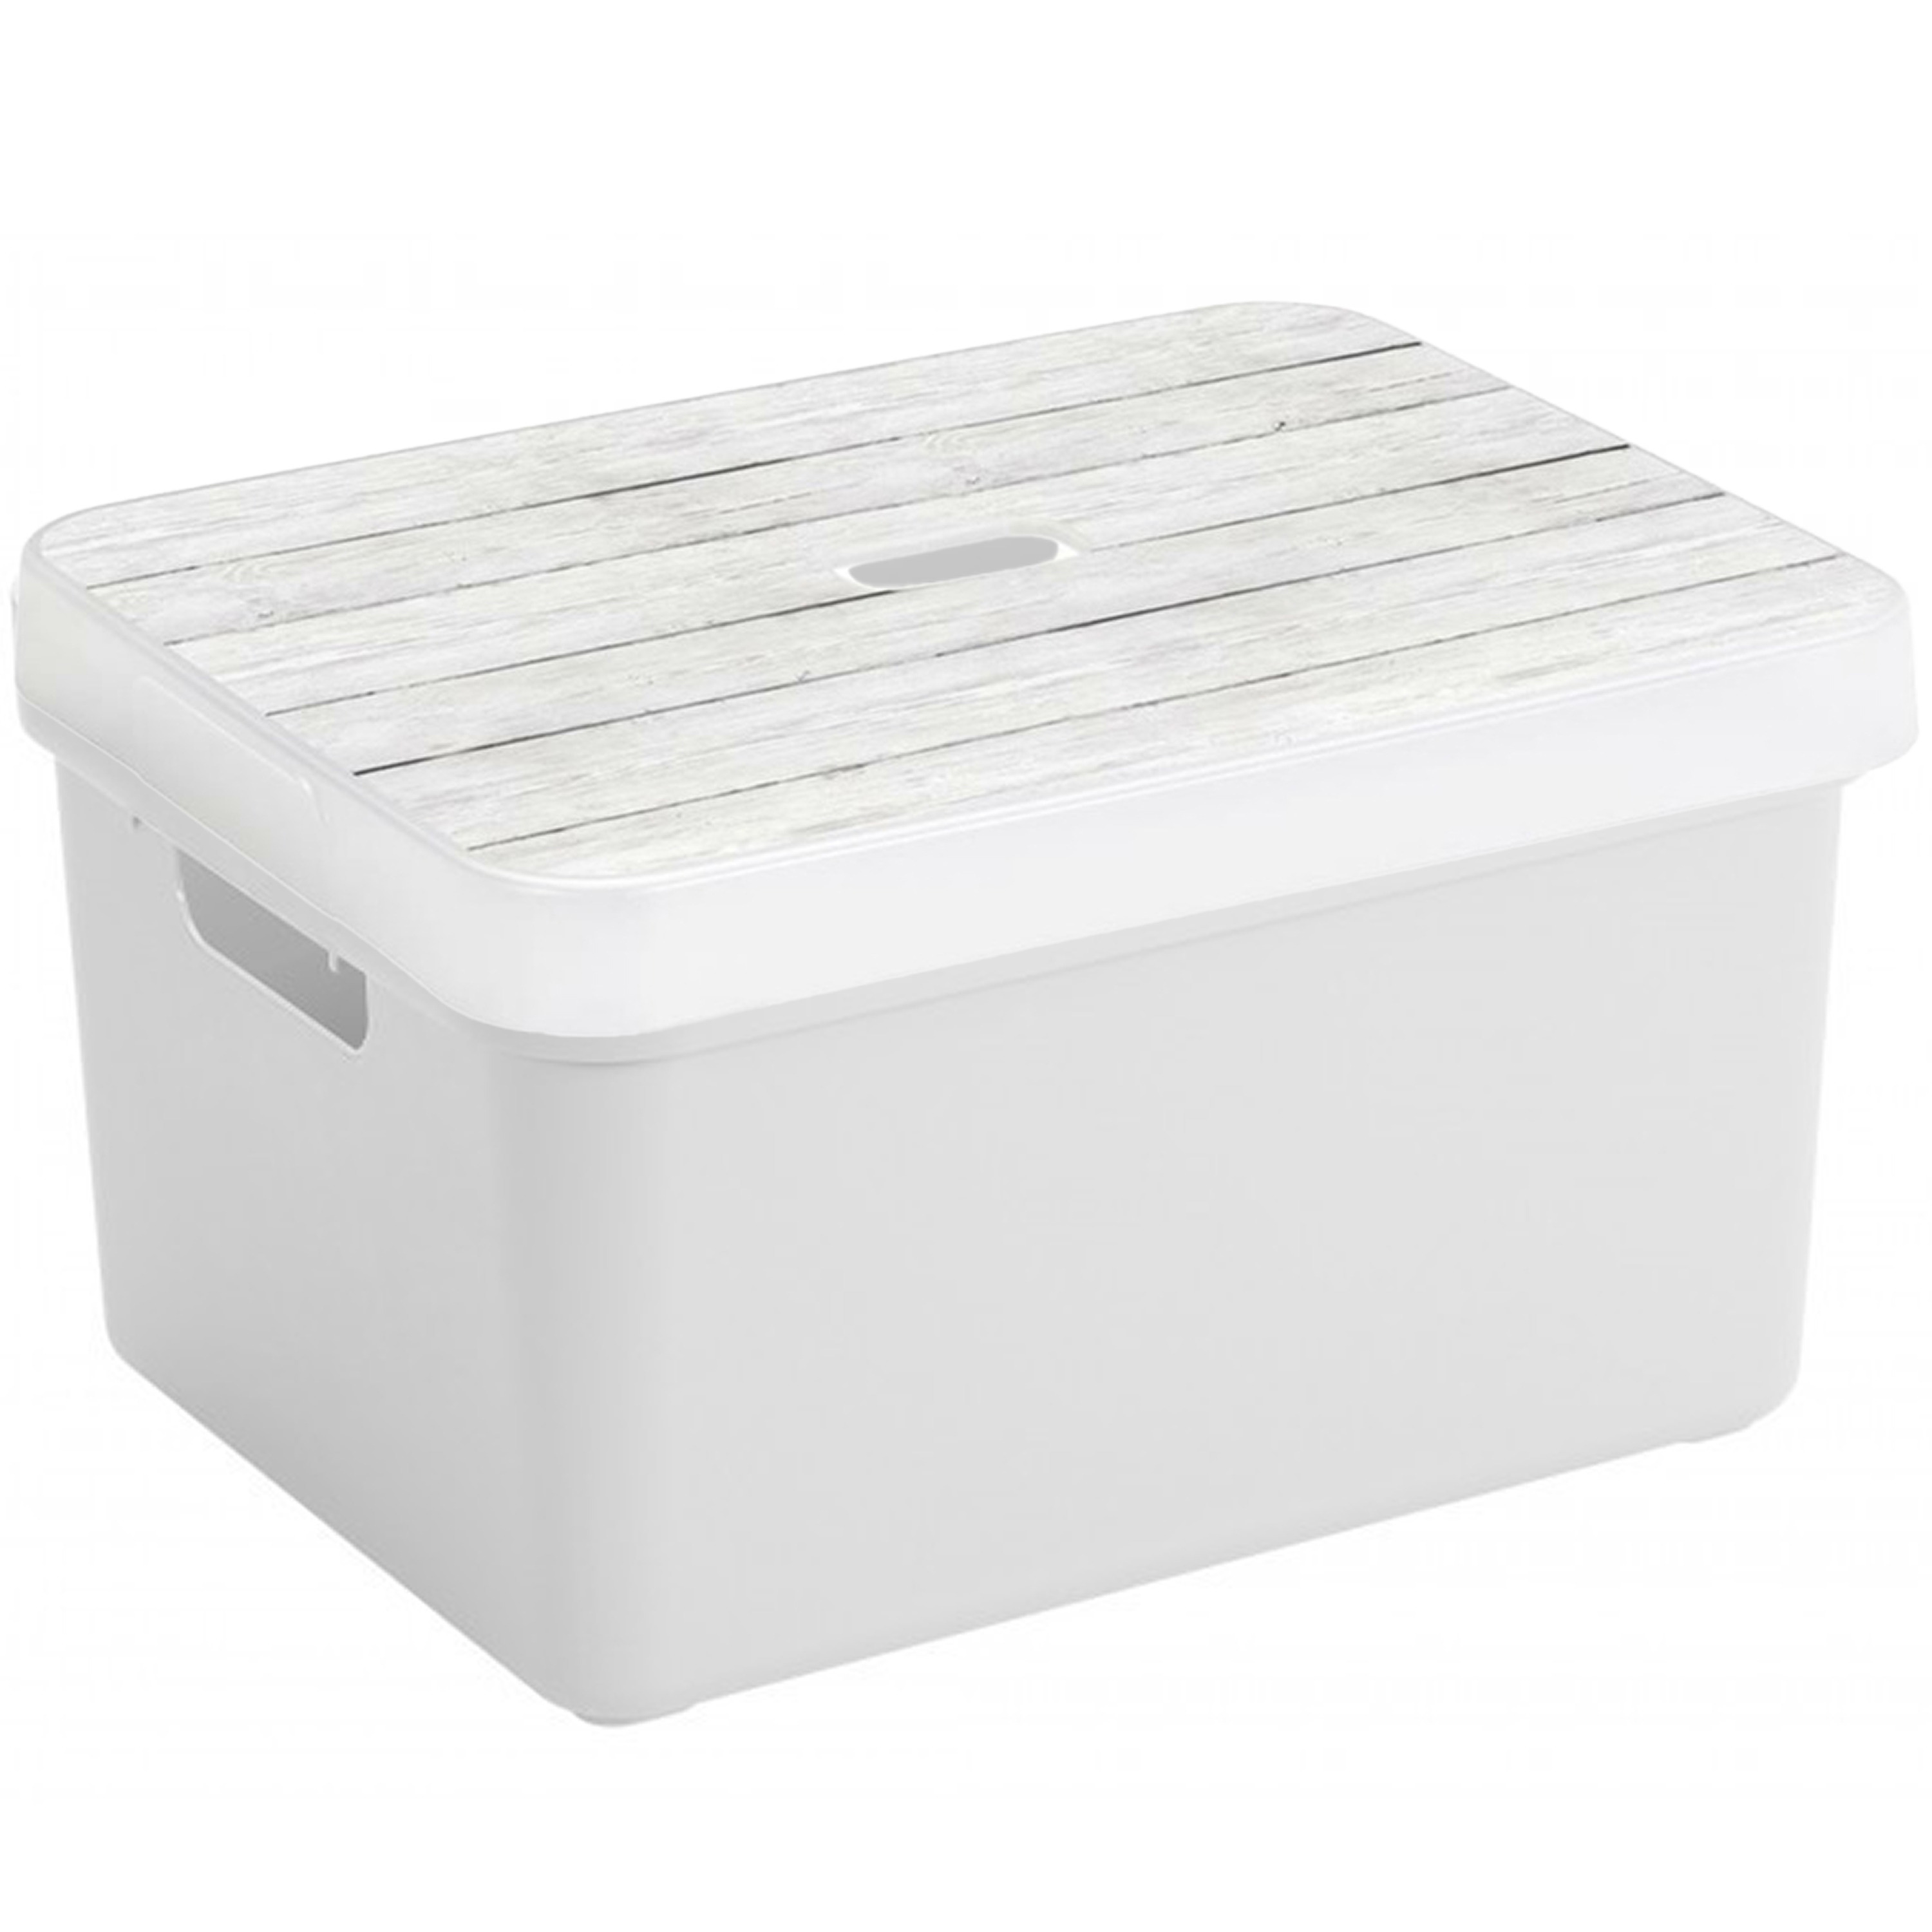 Opbergbox-opbergmand wit 32 liter kunststof met deksel